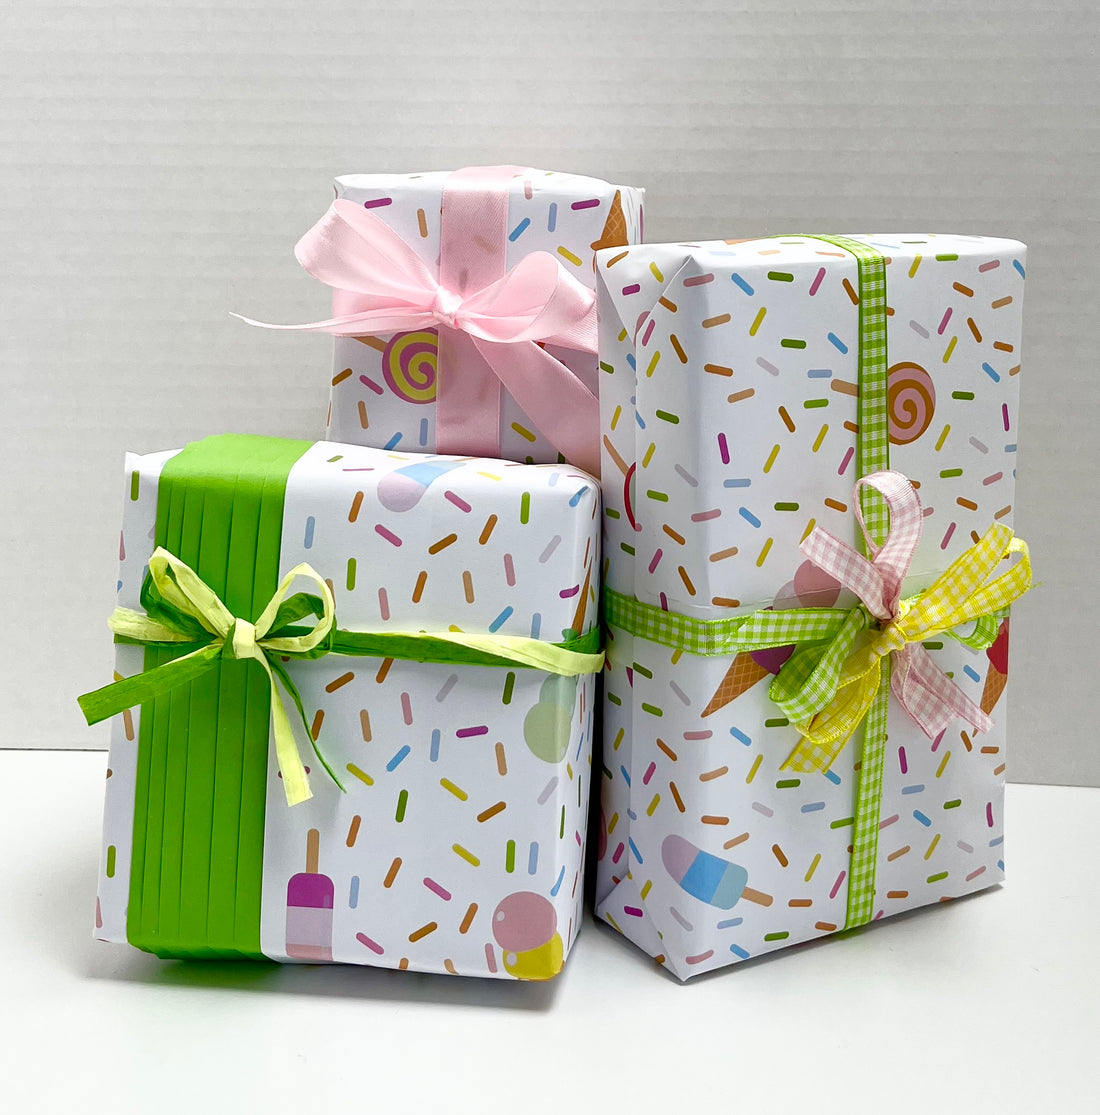 How do you wrap a present?